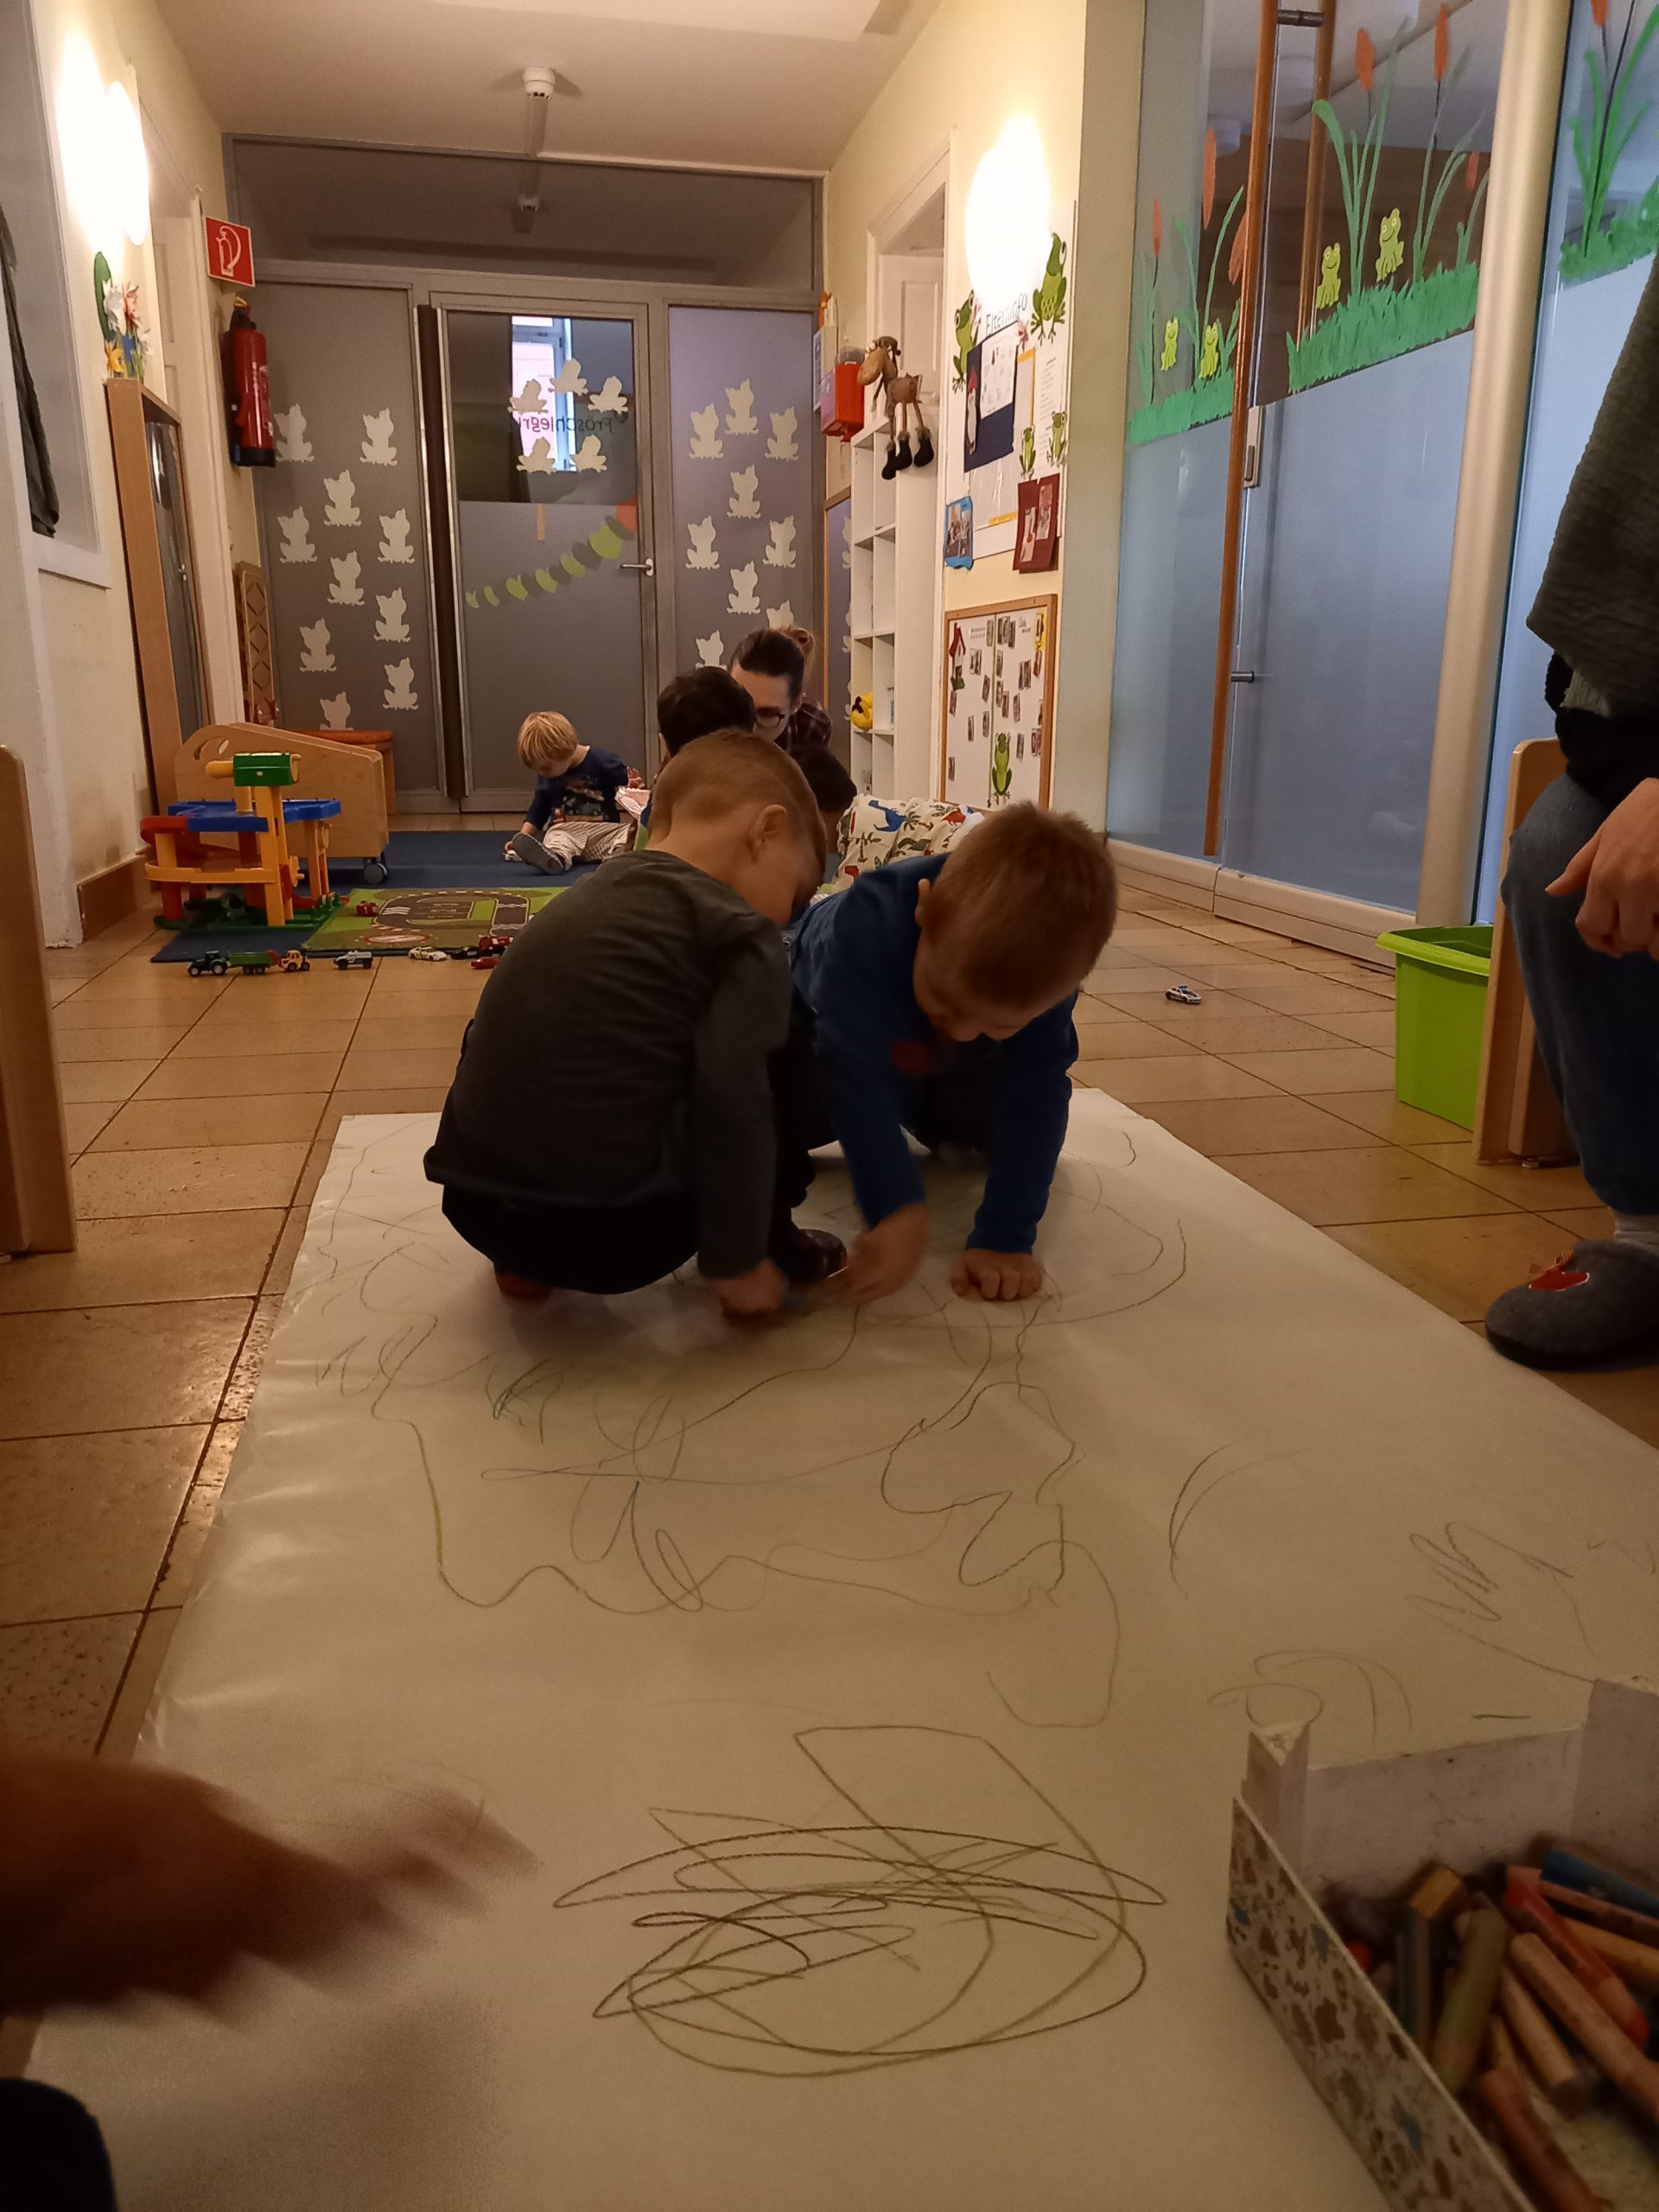 Kinder malen auf einem großen Papier am Boden